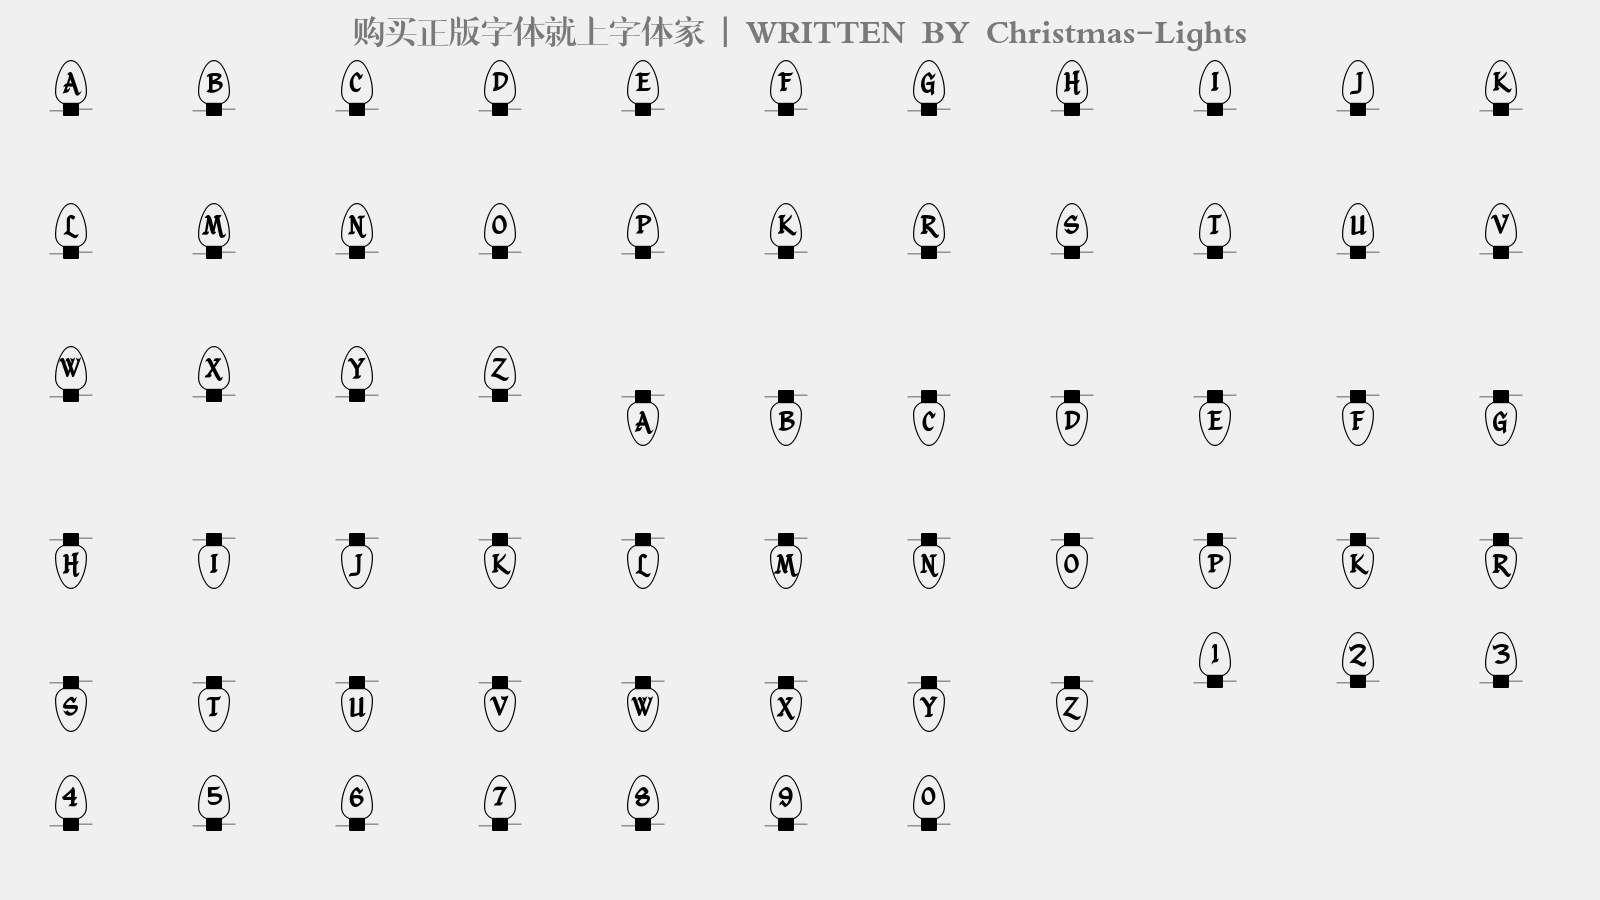 Christmas-Lights - 大写字母/小写字母/数字